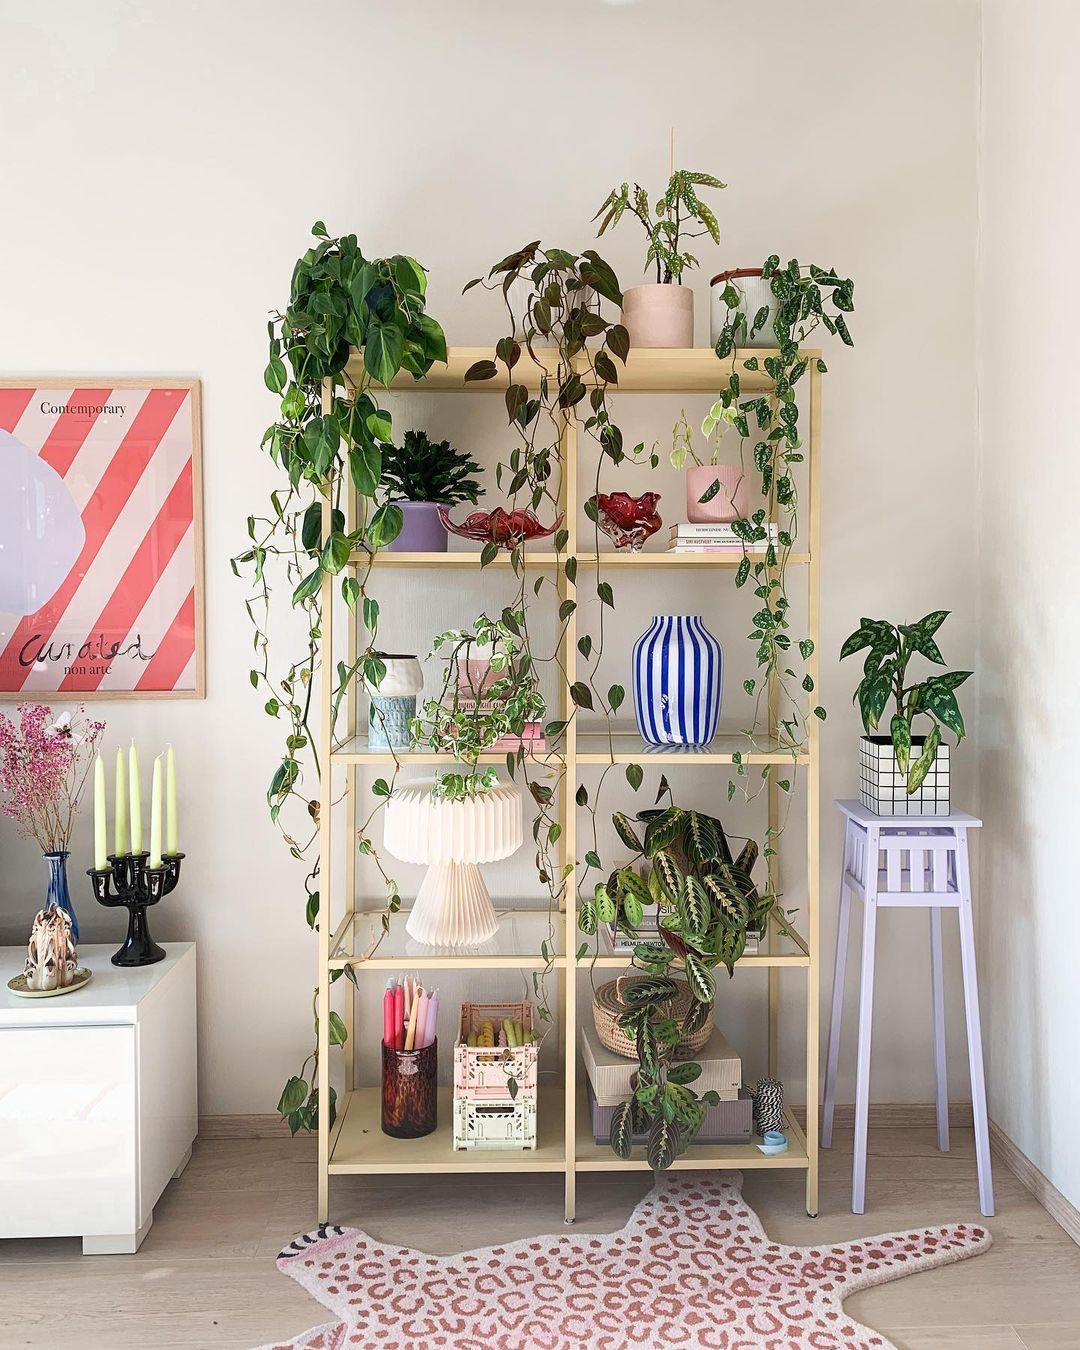 YNDLINGSMØBEL: Denne hyllen fra Ikea har Krieger malt og fylt med planter og dekor. 